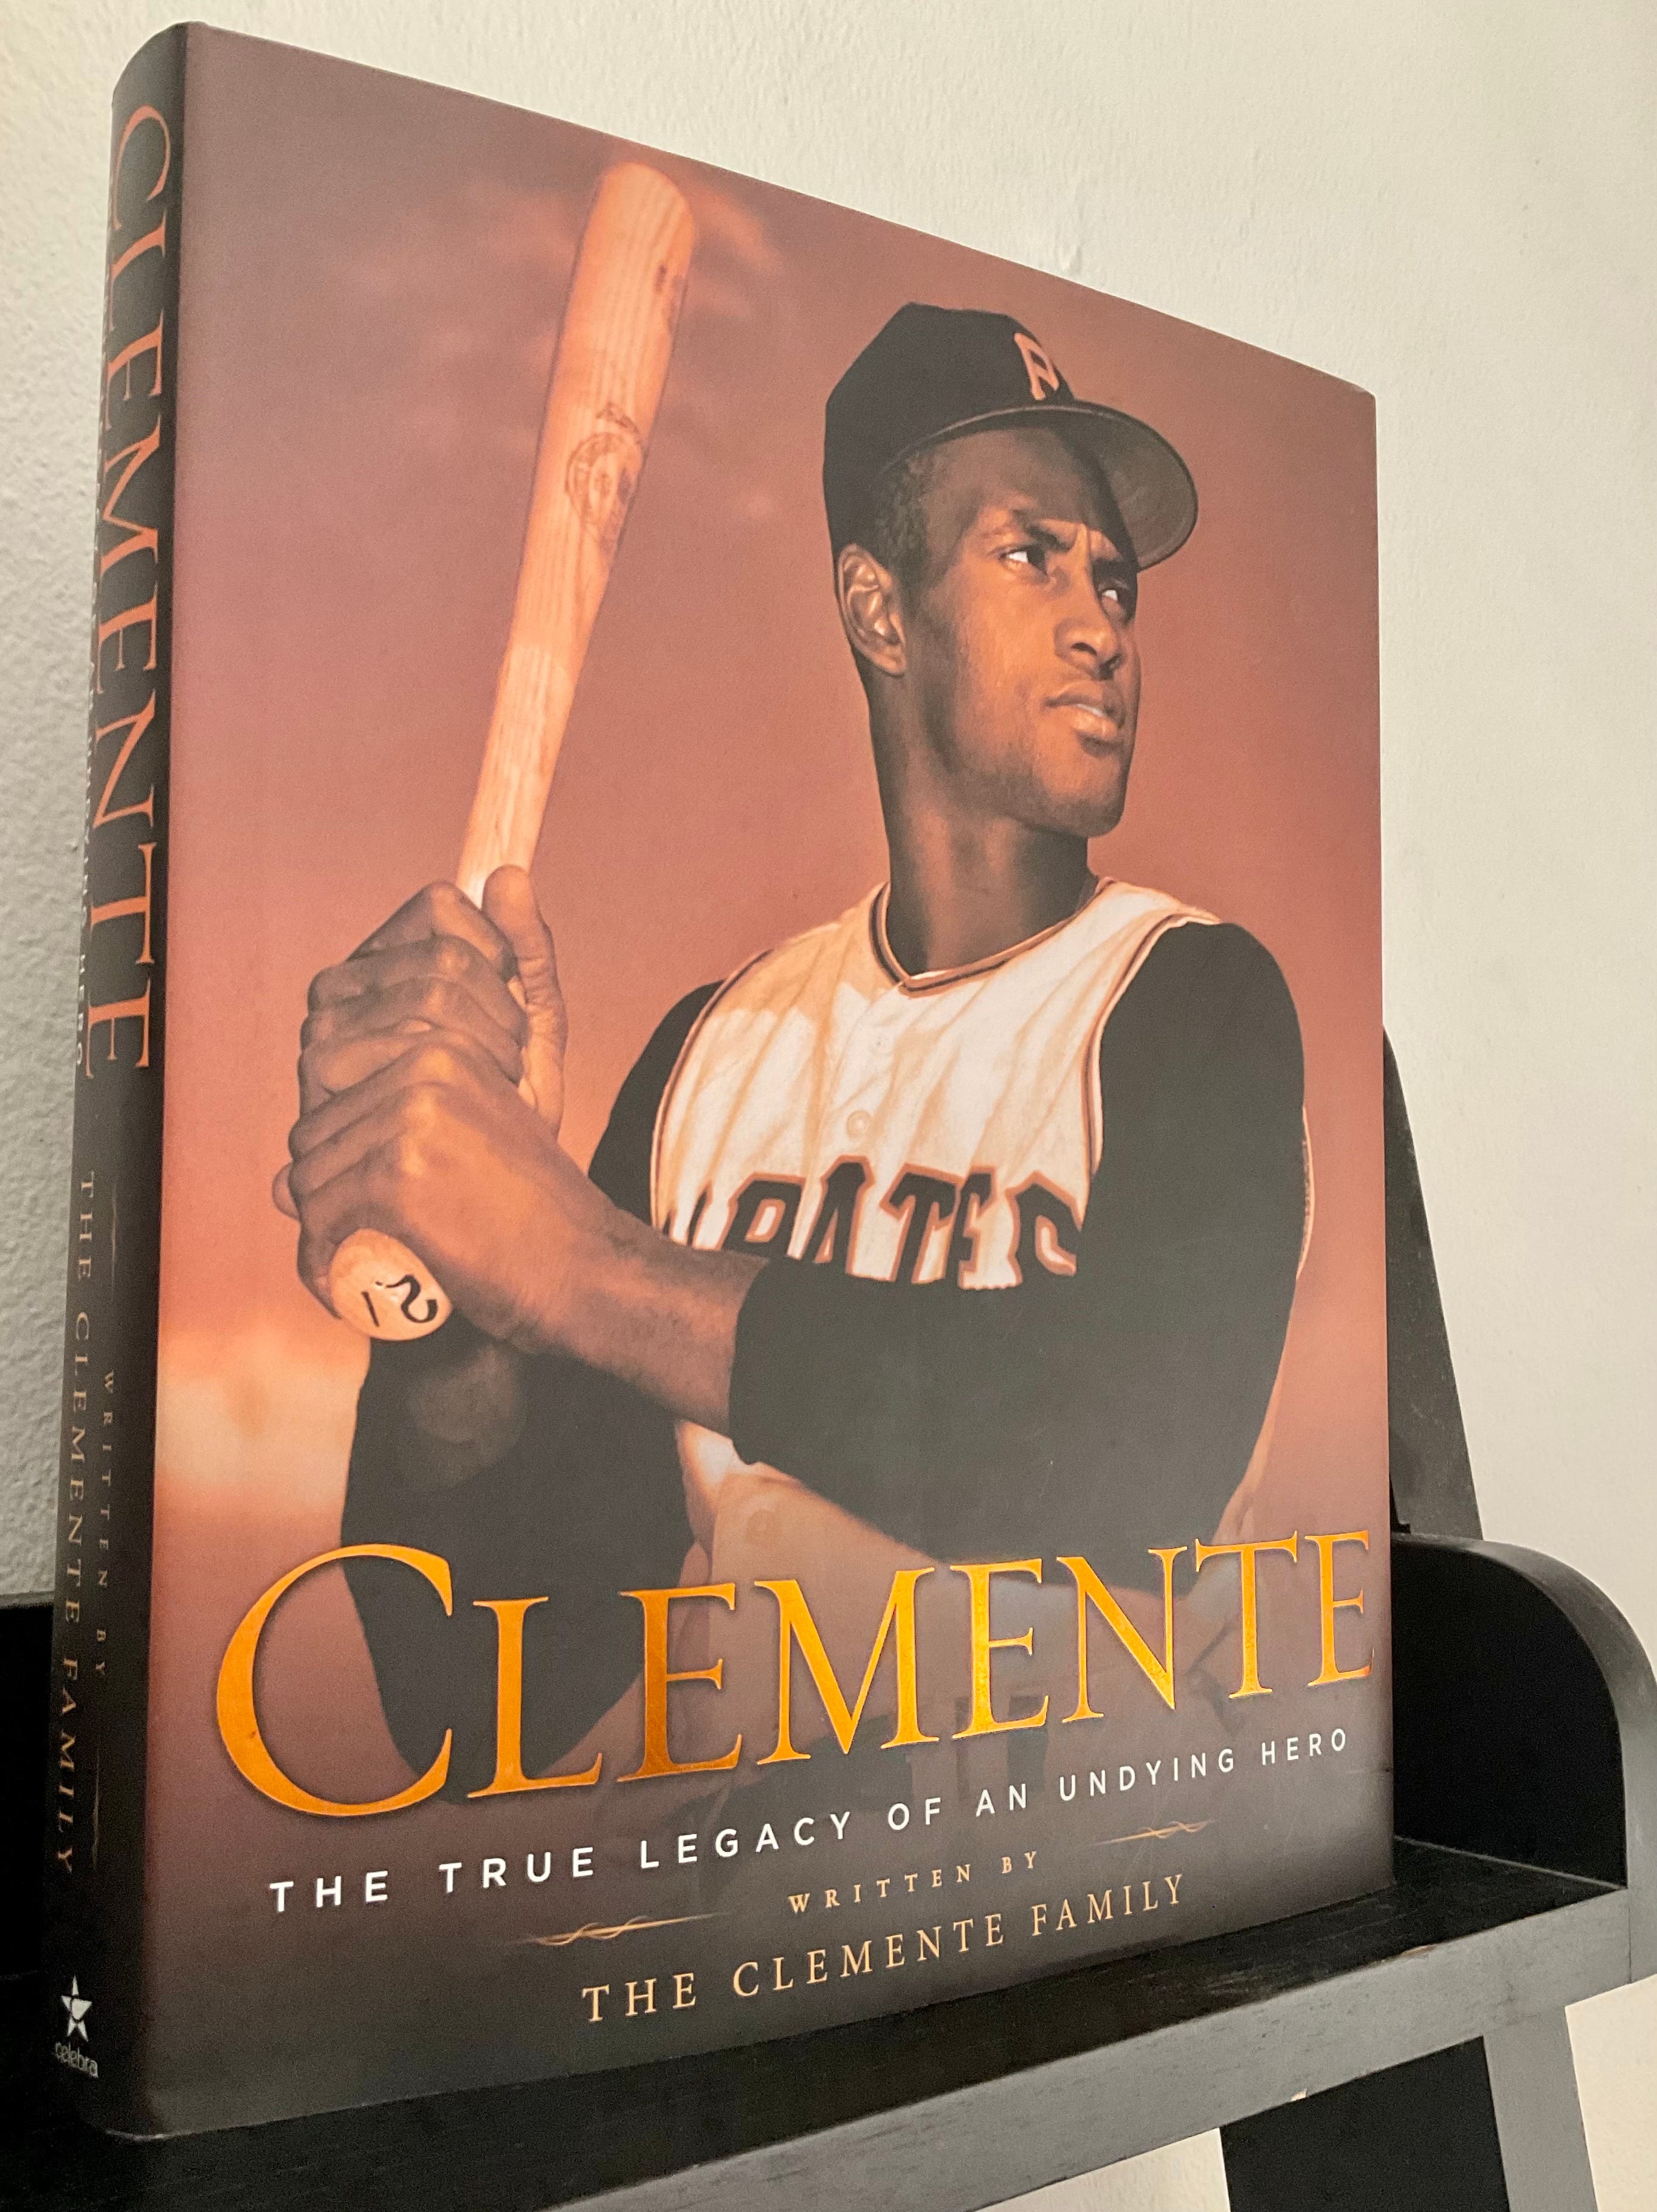 Roberto Clemente, Pittsburgh's Hero